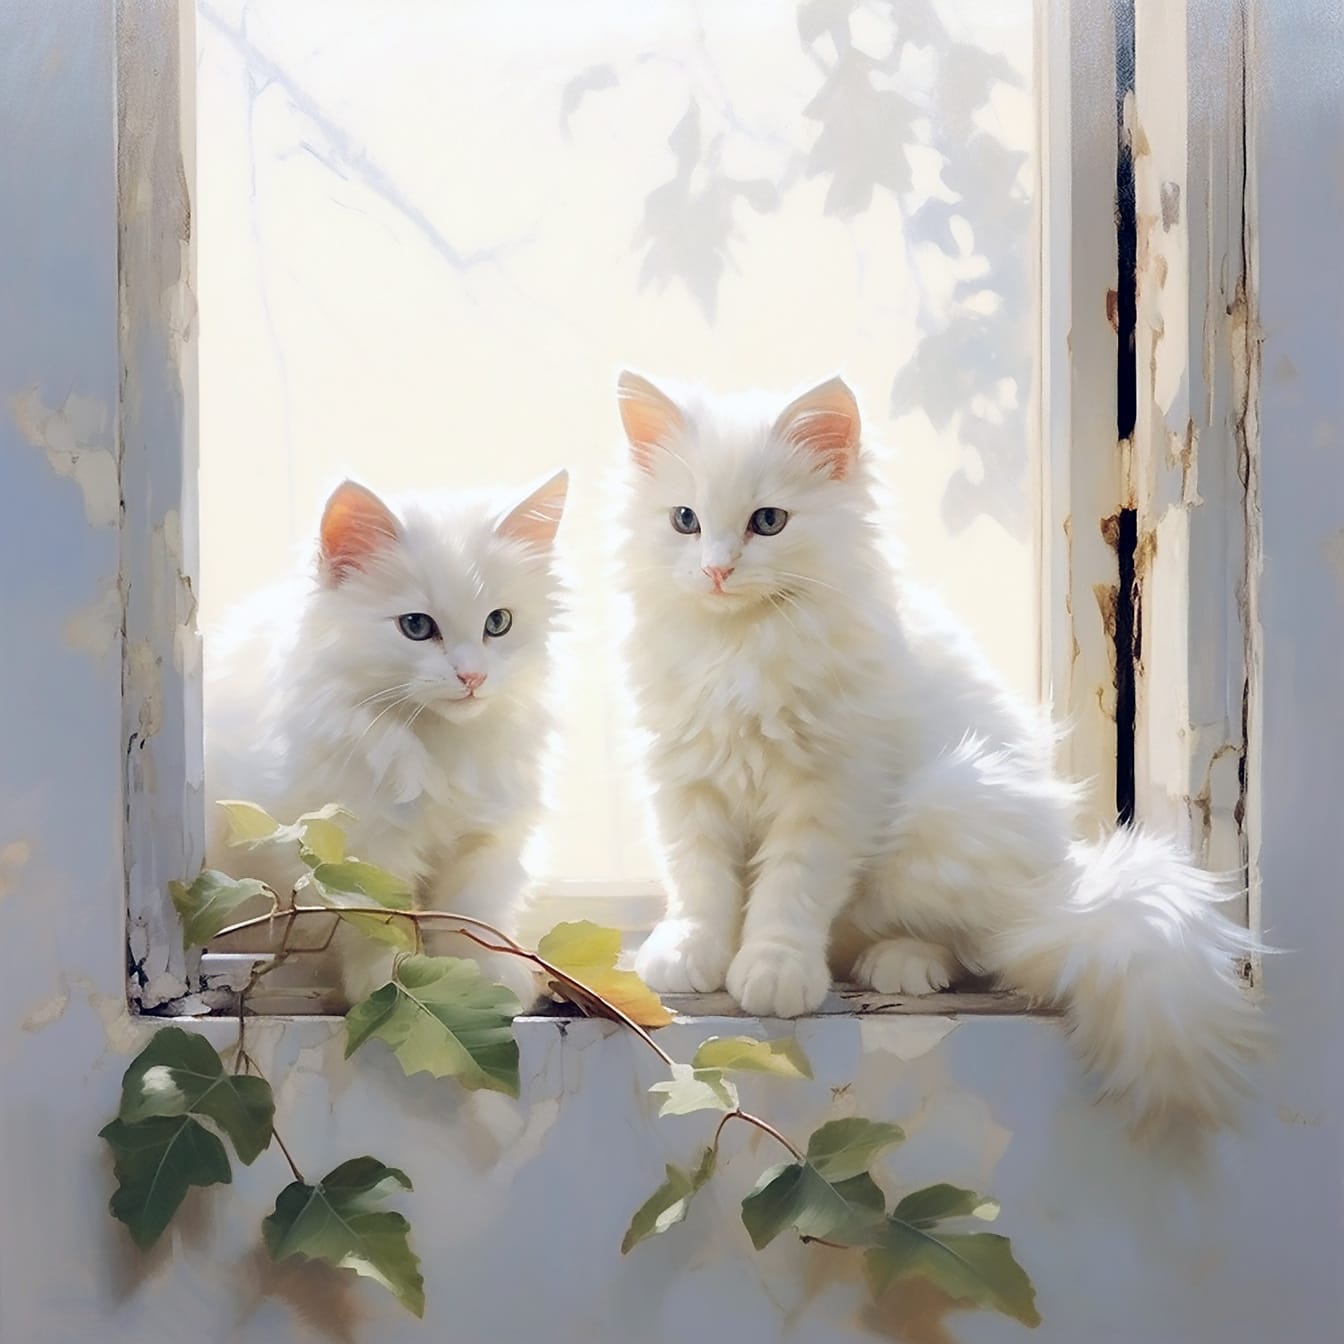 Симпатичные белые ангорские котята, сидящие на старом окне, цифровая иллюстрация